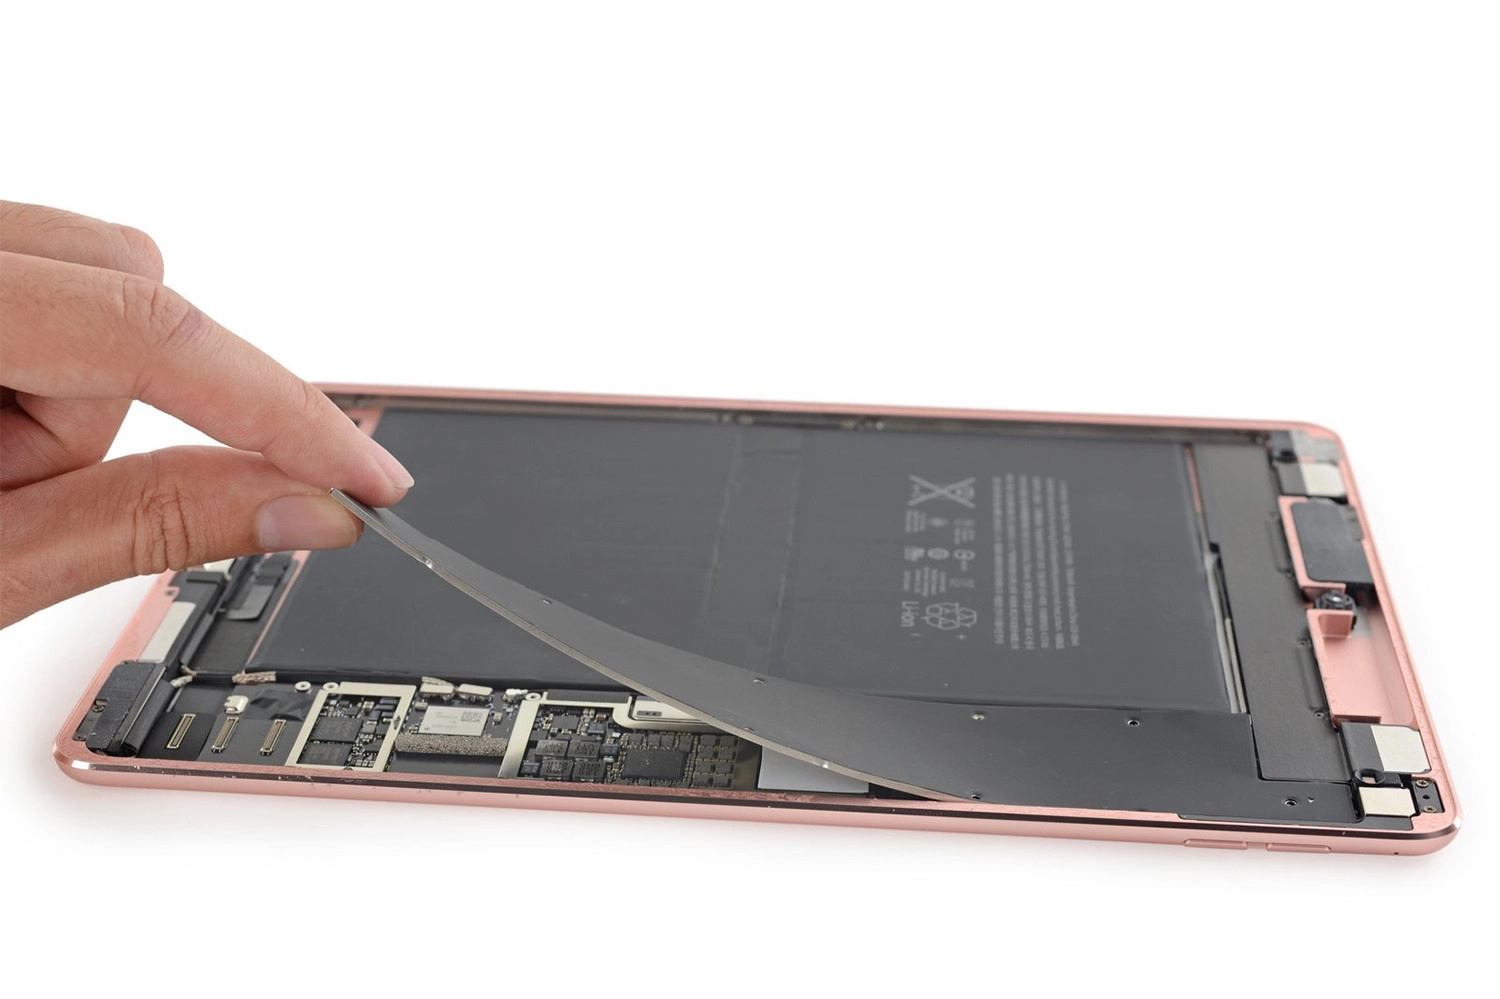 Thay Pin cho iPad Pro 9.7 inch giá bao nhiêu?